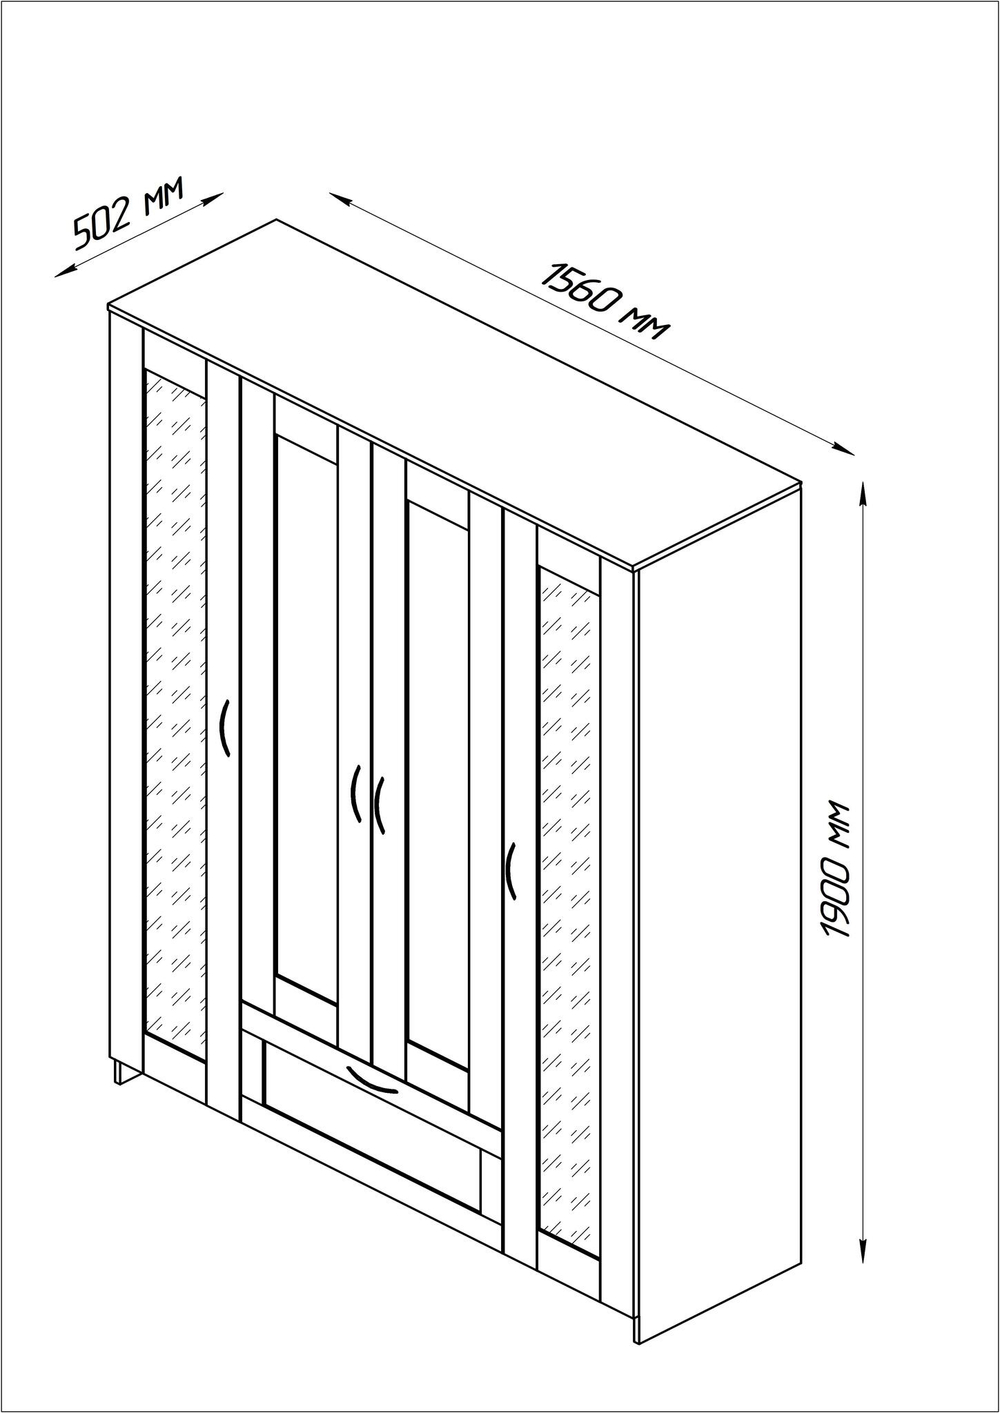 Шкаф СИРИУС комбинированный 4 двери (2 зеркала) и 1 ящик (дуб венге)